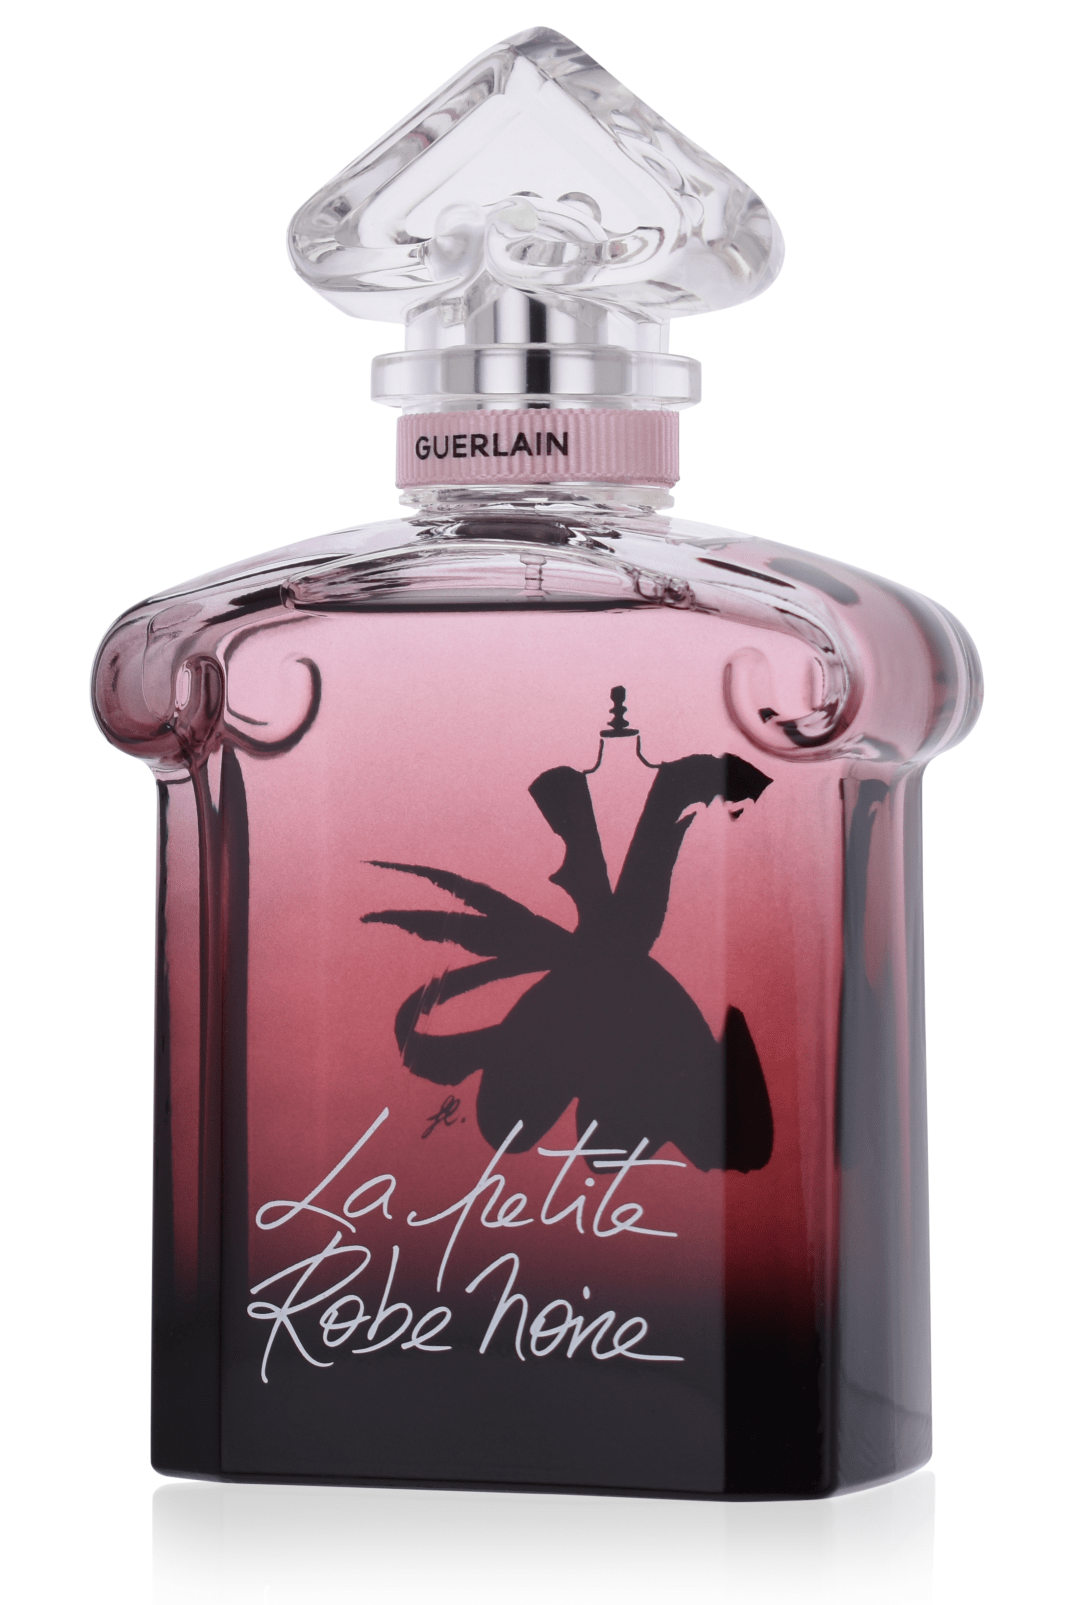 Guerlain Le Petite Robe Noire 100 ml Eau de Parfum Intense 